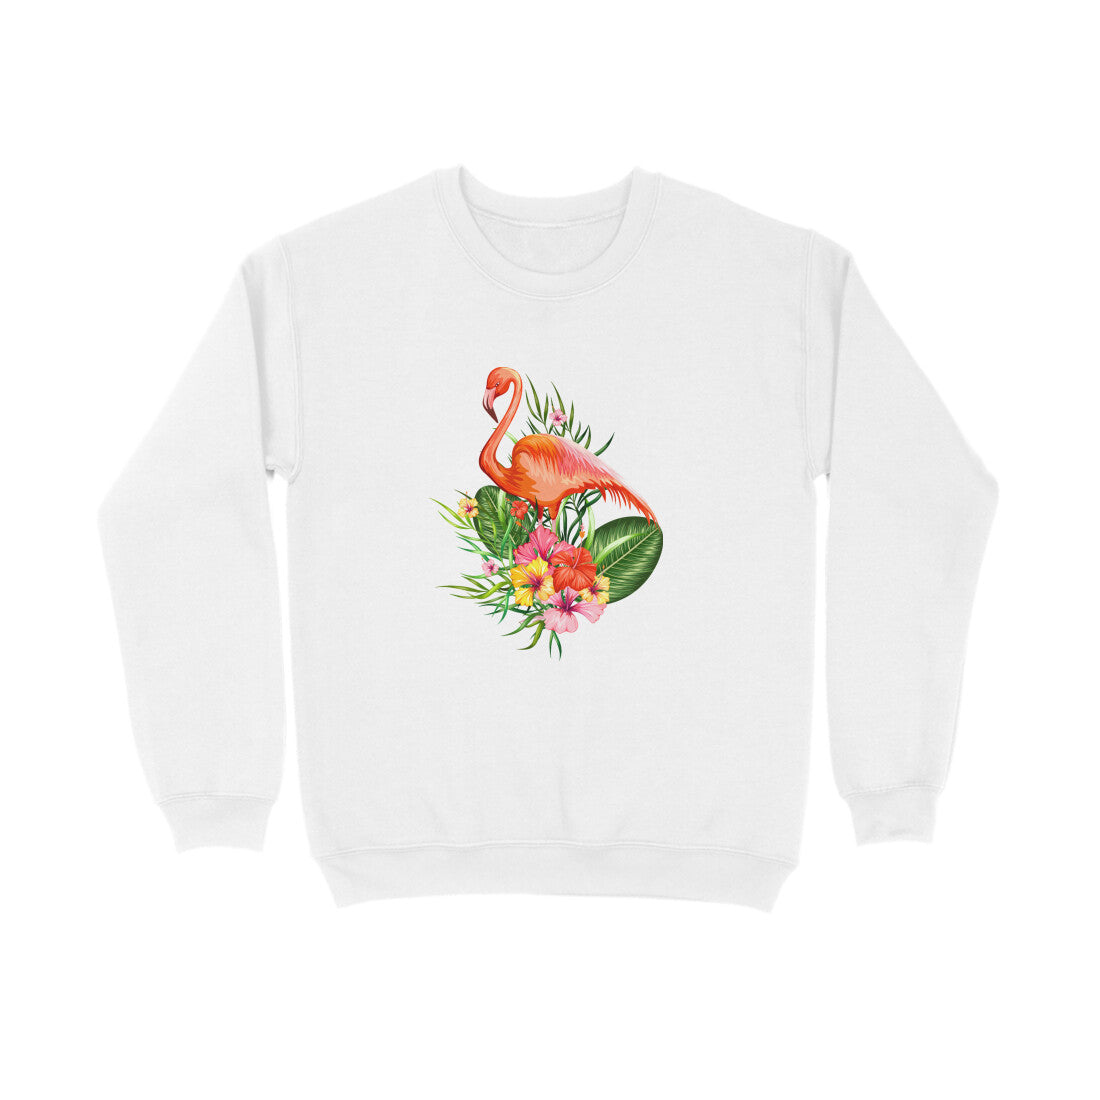 Stepevoli Clothing - Sweatshirt (Unisex) - Fashionable Flamingo (8 Colours)